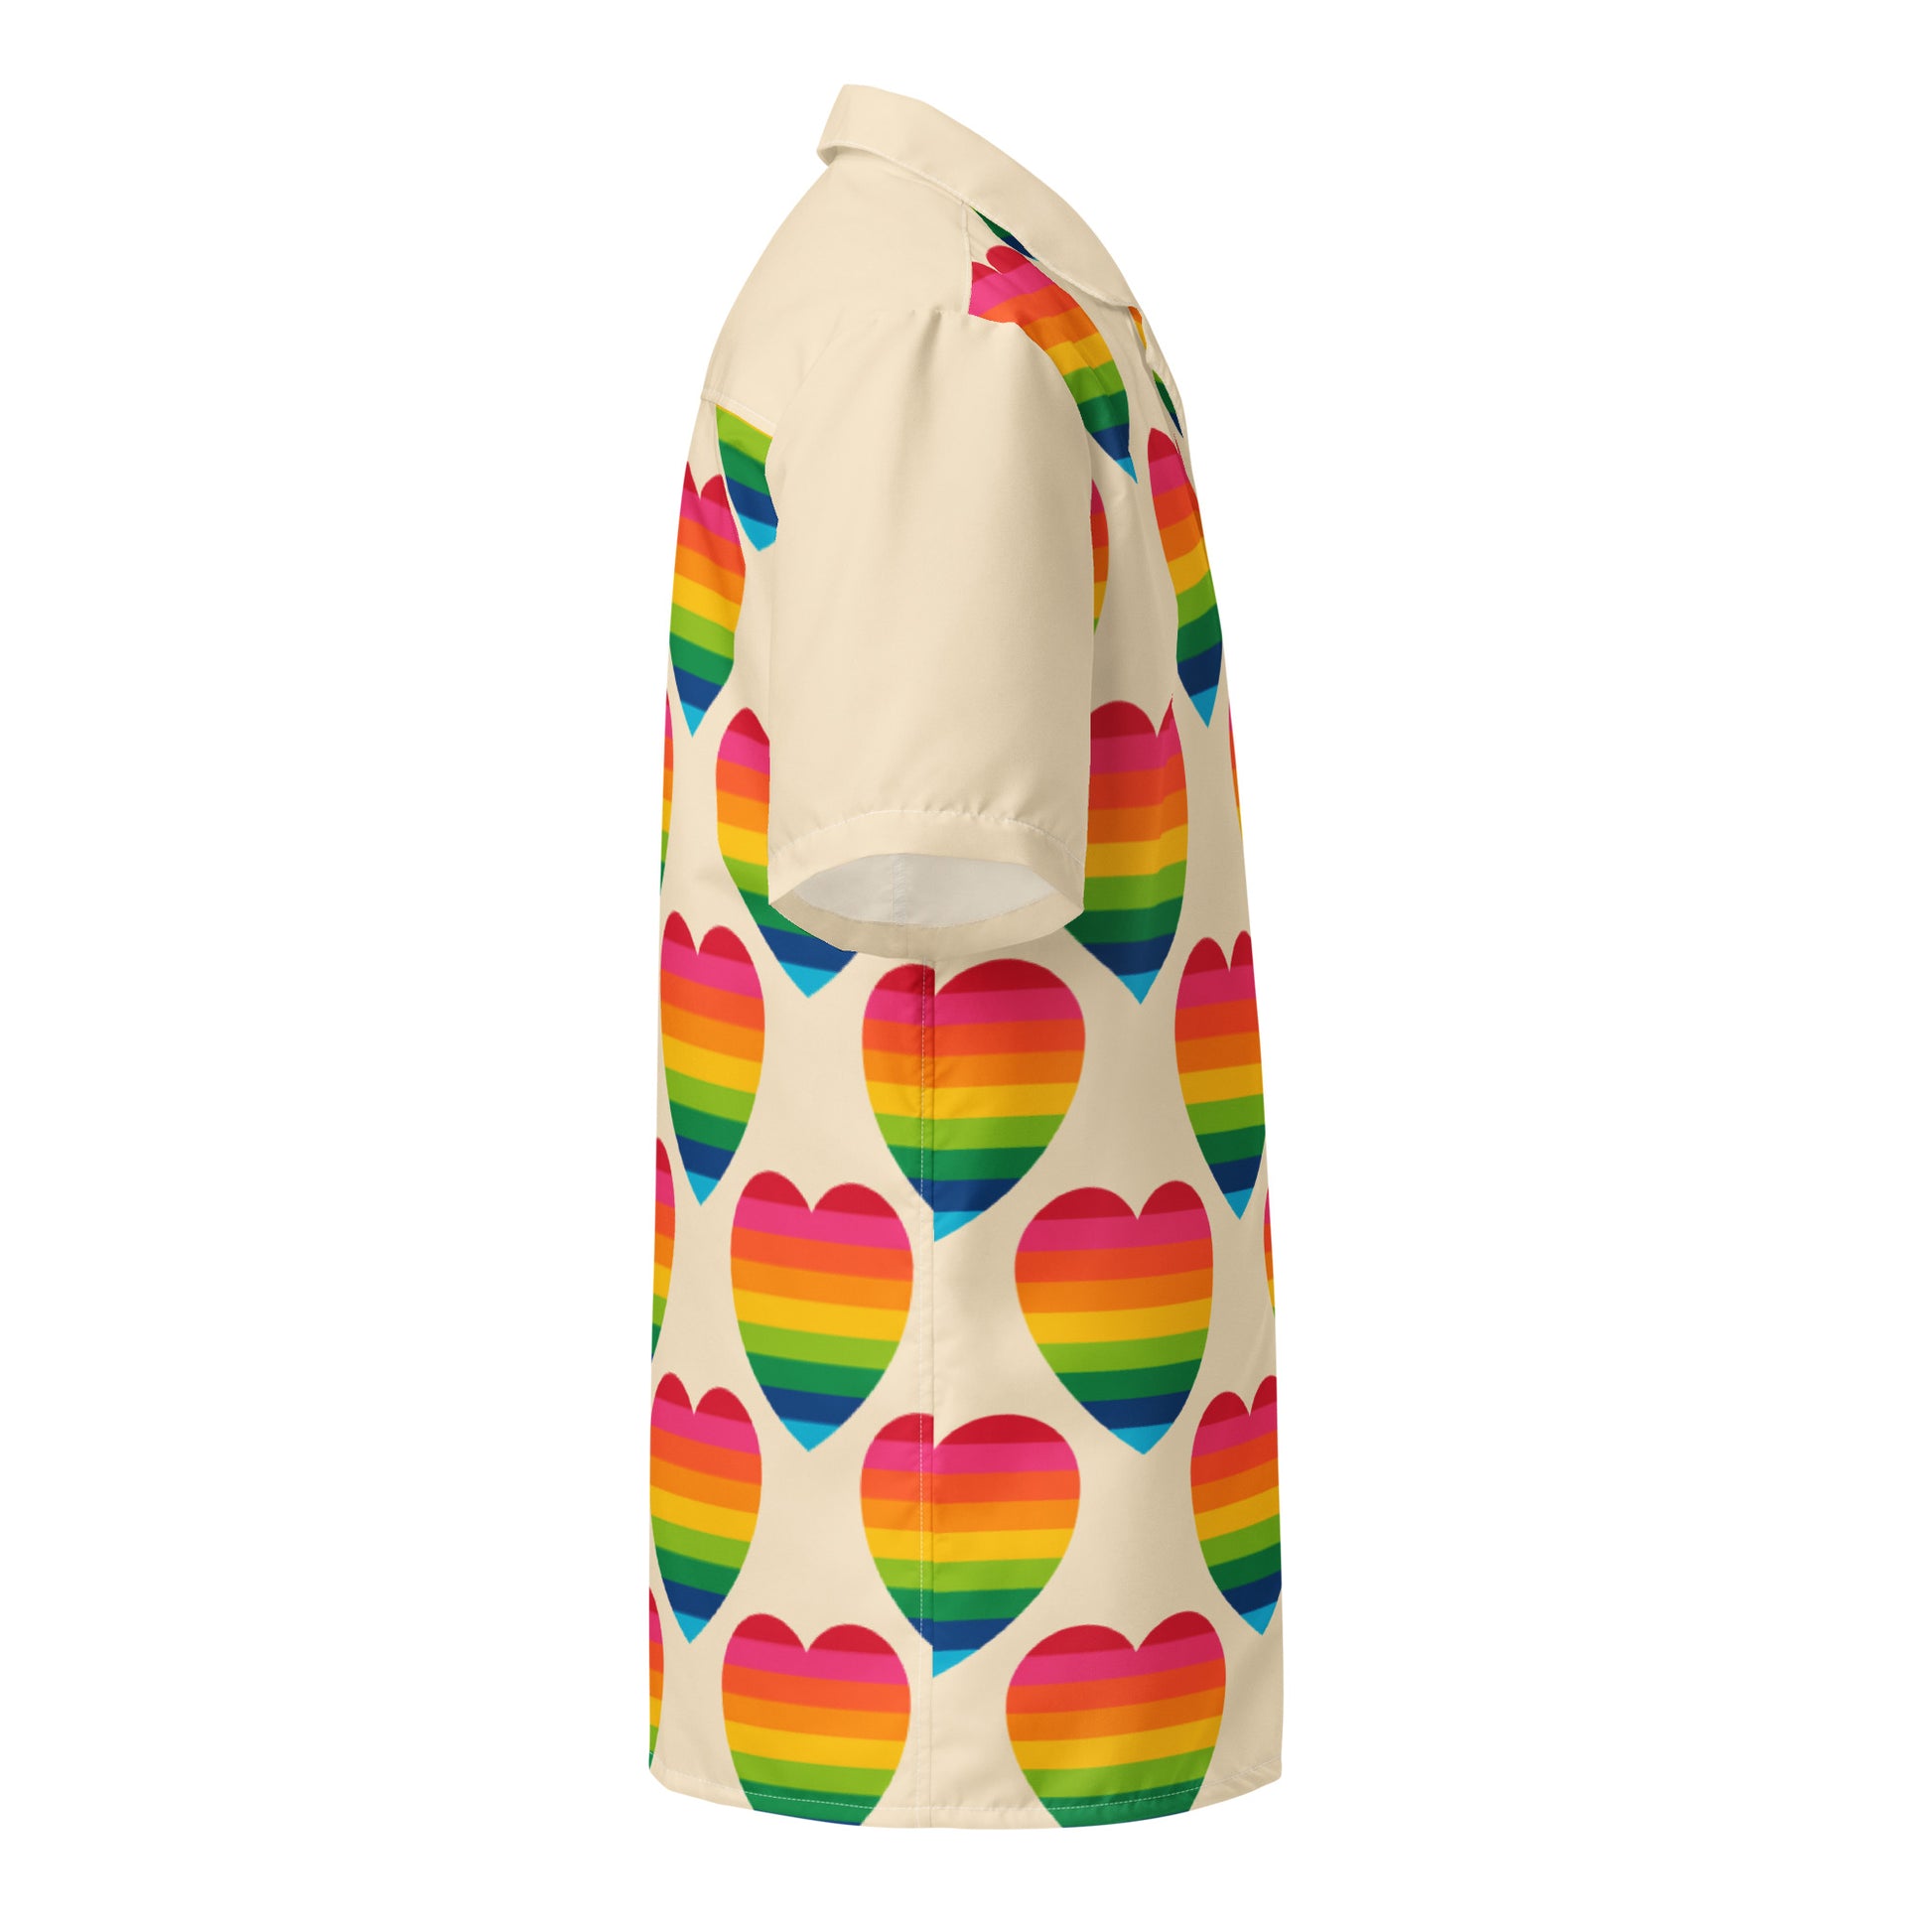 ELLIE LOVE rainbow -2- Unisex button shirt